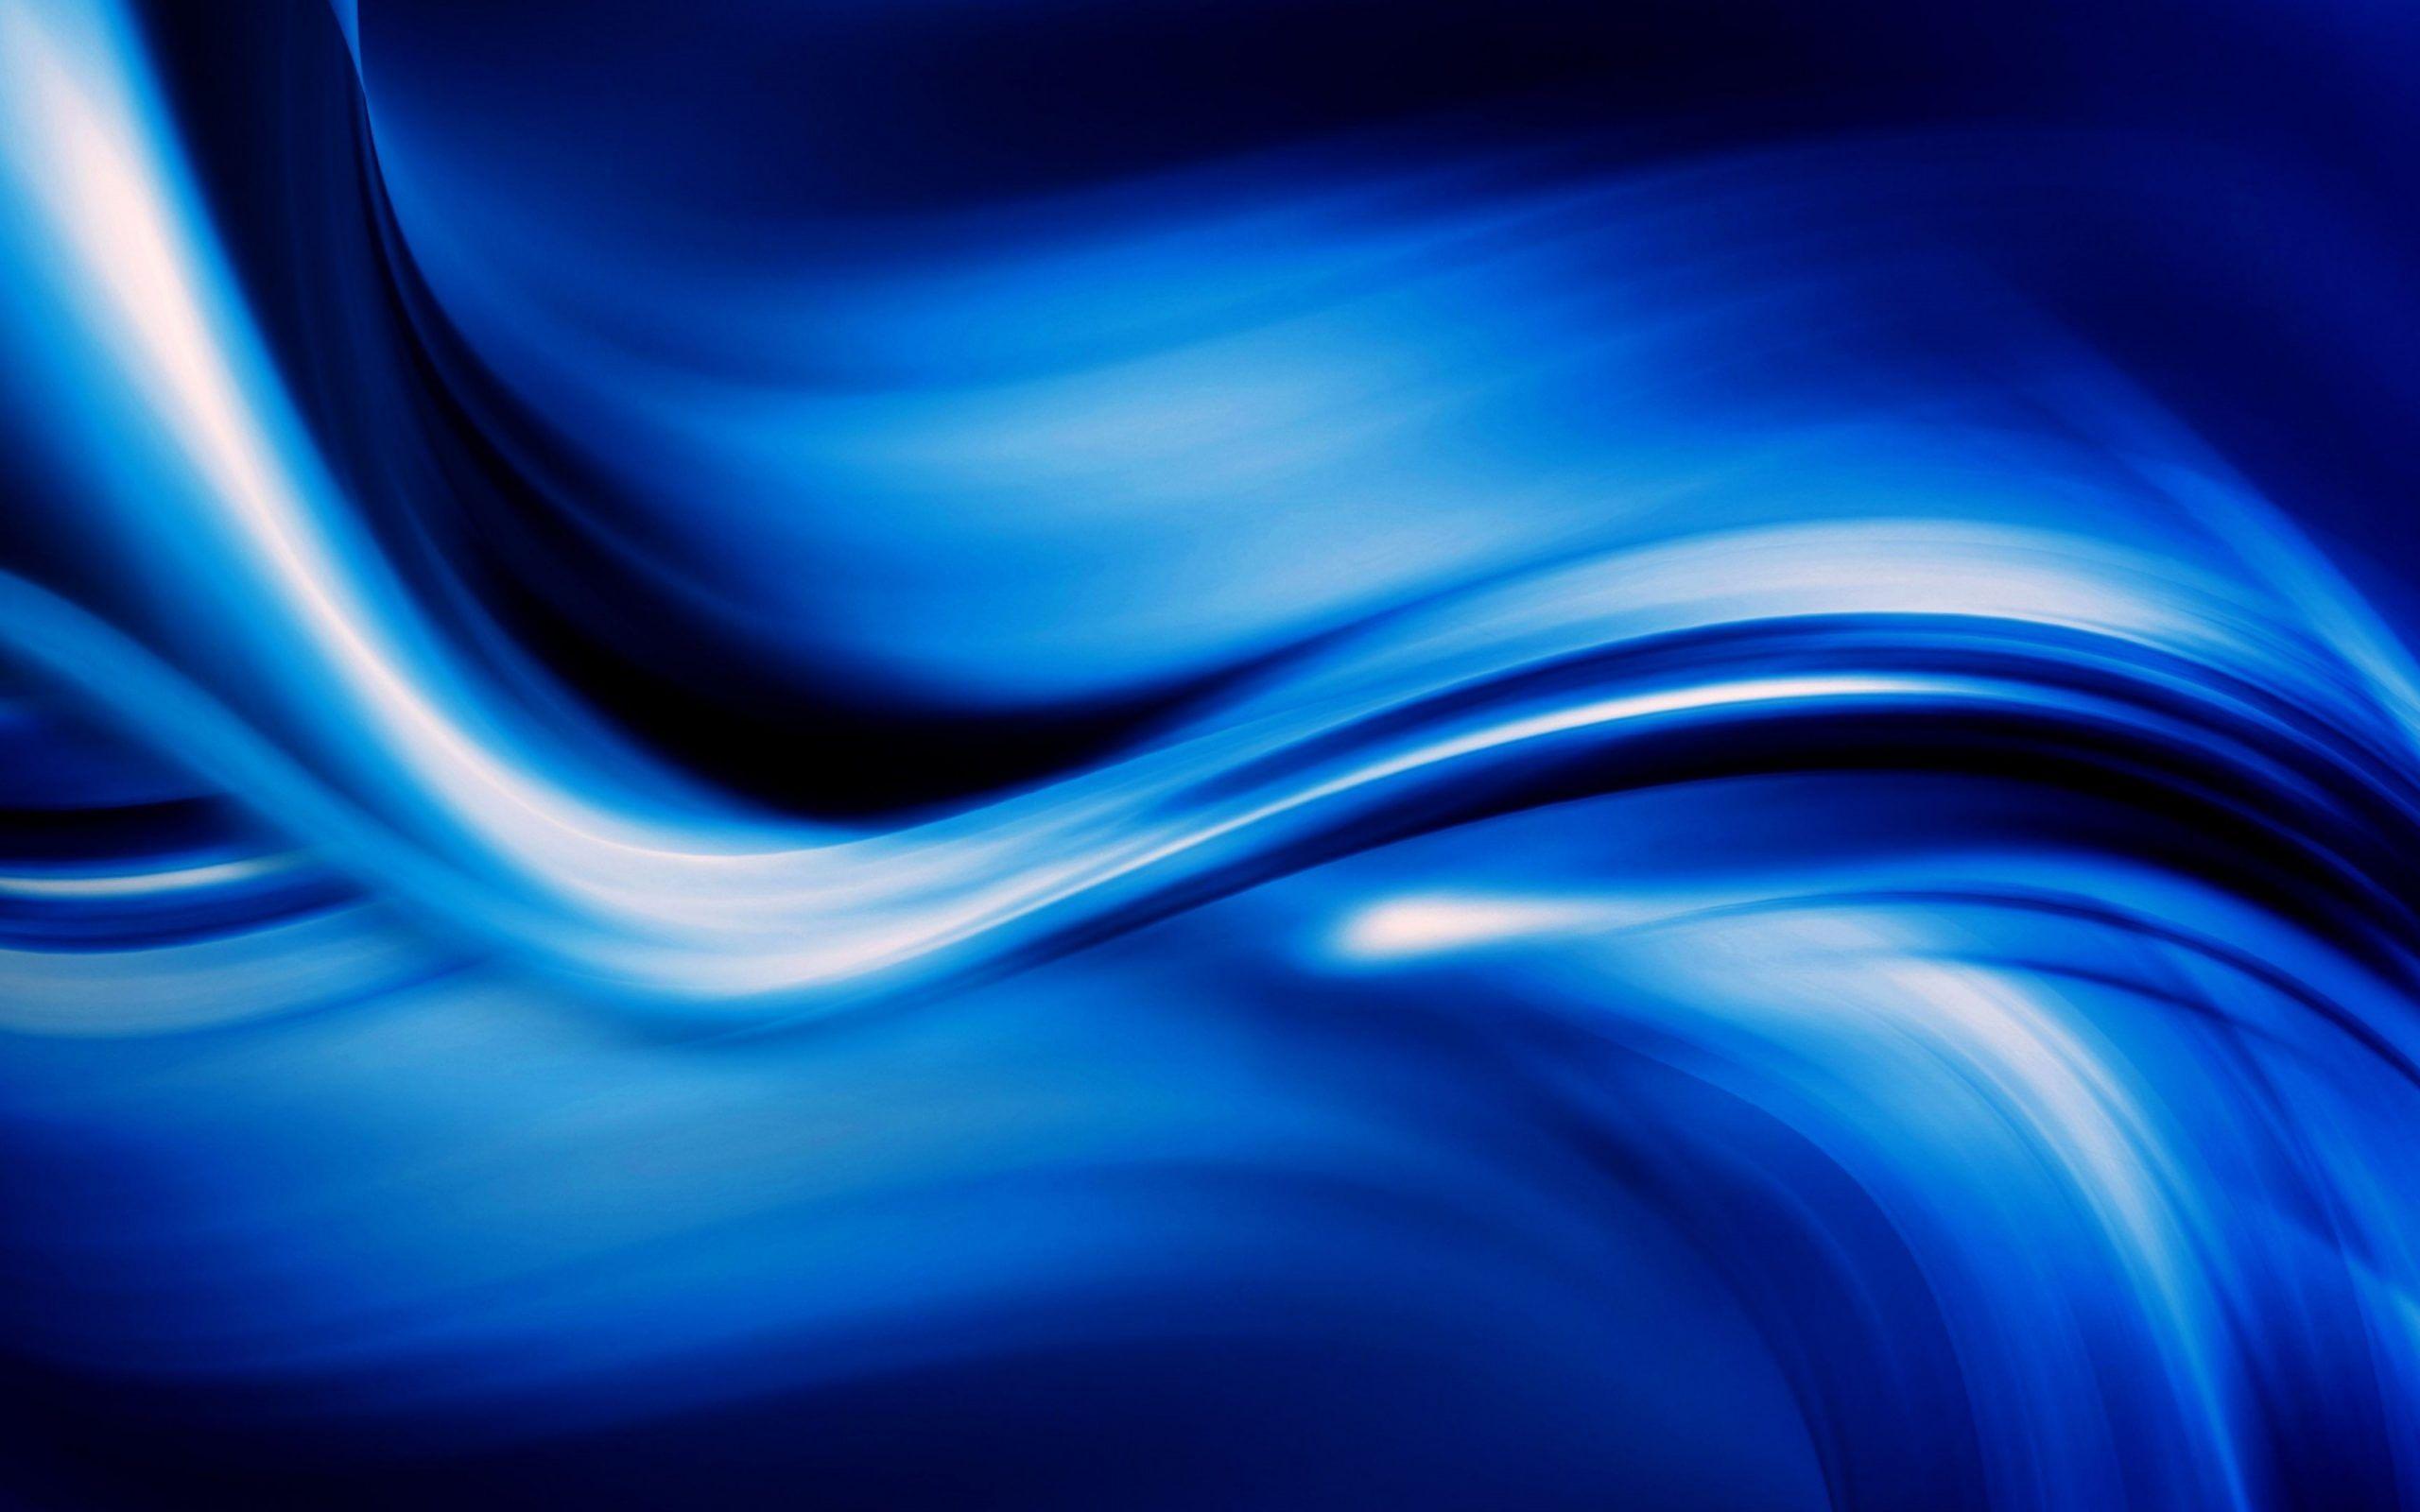 2560x1600 Hình nền HD Màu xanh da trời Màu đỏ Thiên nhiên Màu sắc thiết kế tường Bướm màu xanh lá cây Blu Ray Sao biển